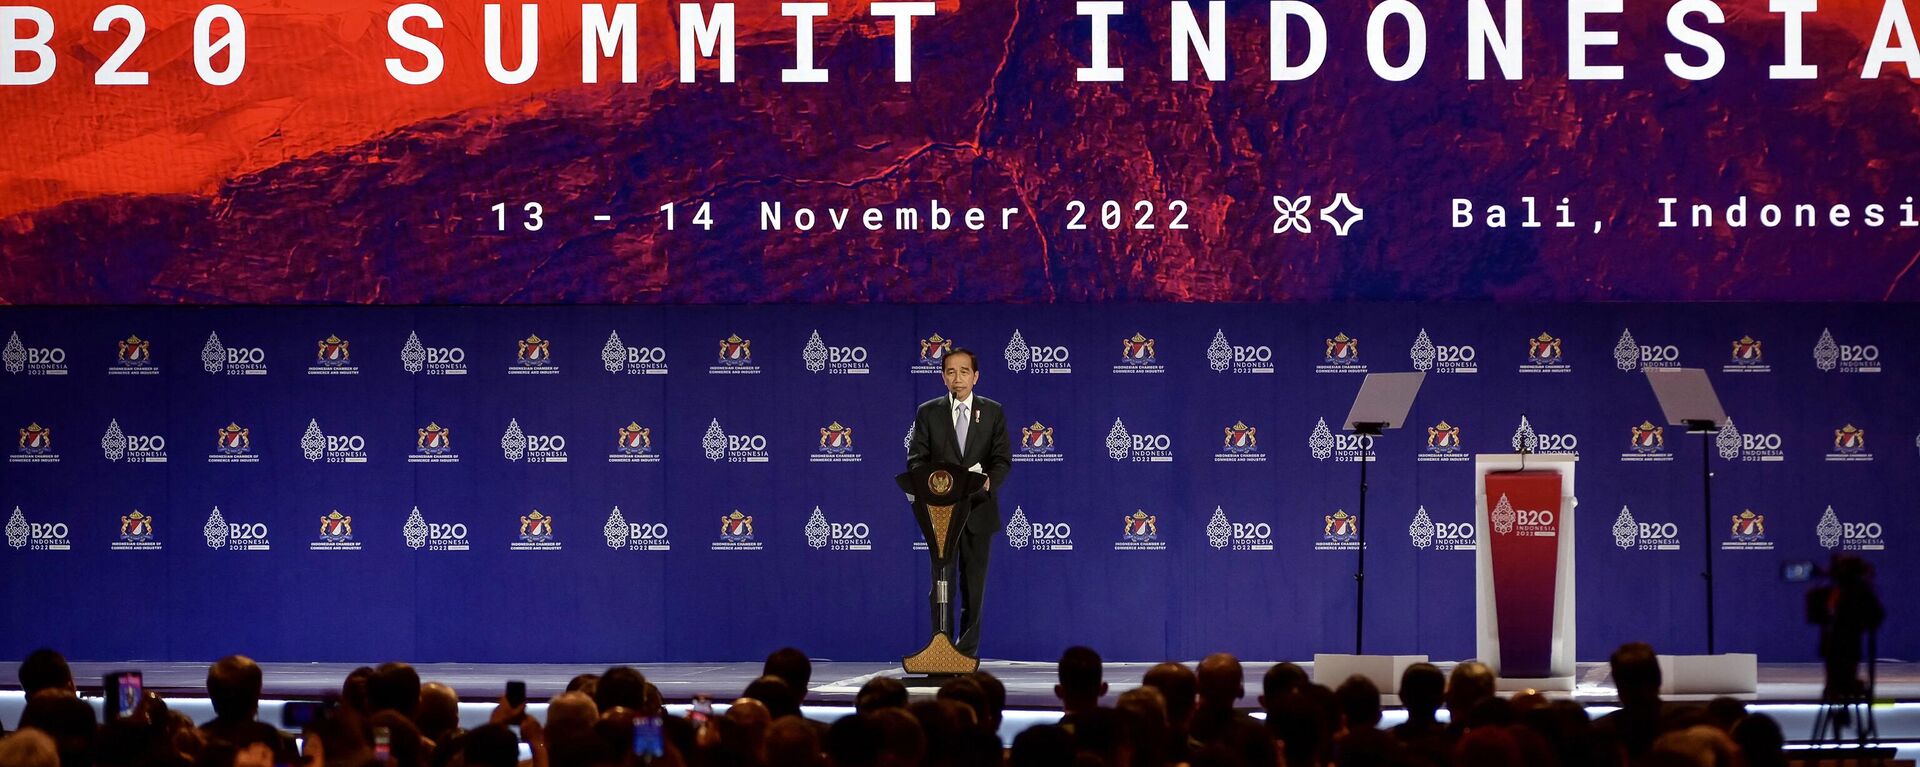 Tổng thống Indonesia tại lễ khai mạc hội nghị thượng đỉnh G20  - Sputnik Việt Nam, 1920, 15.11.2022